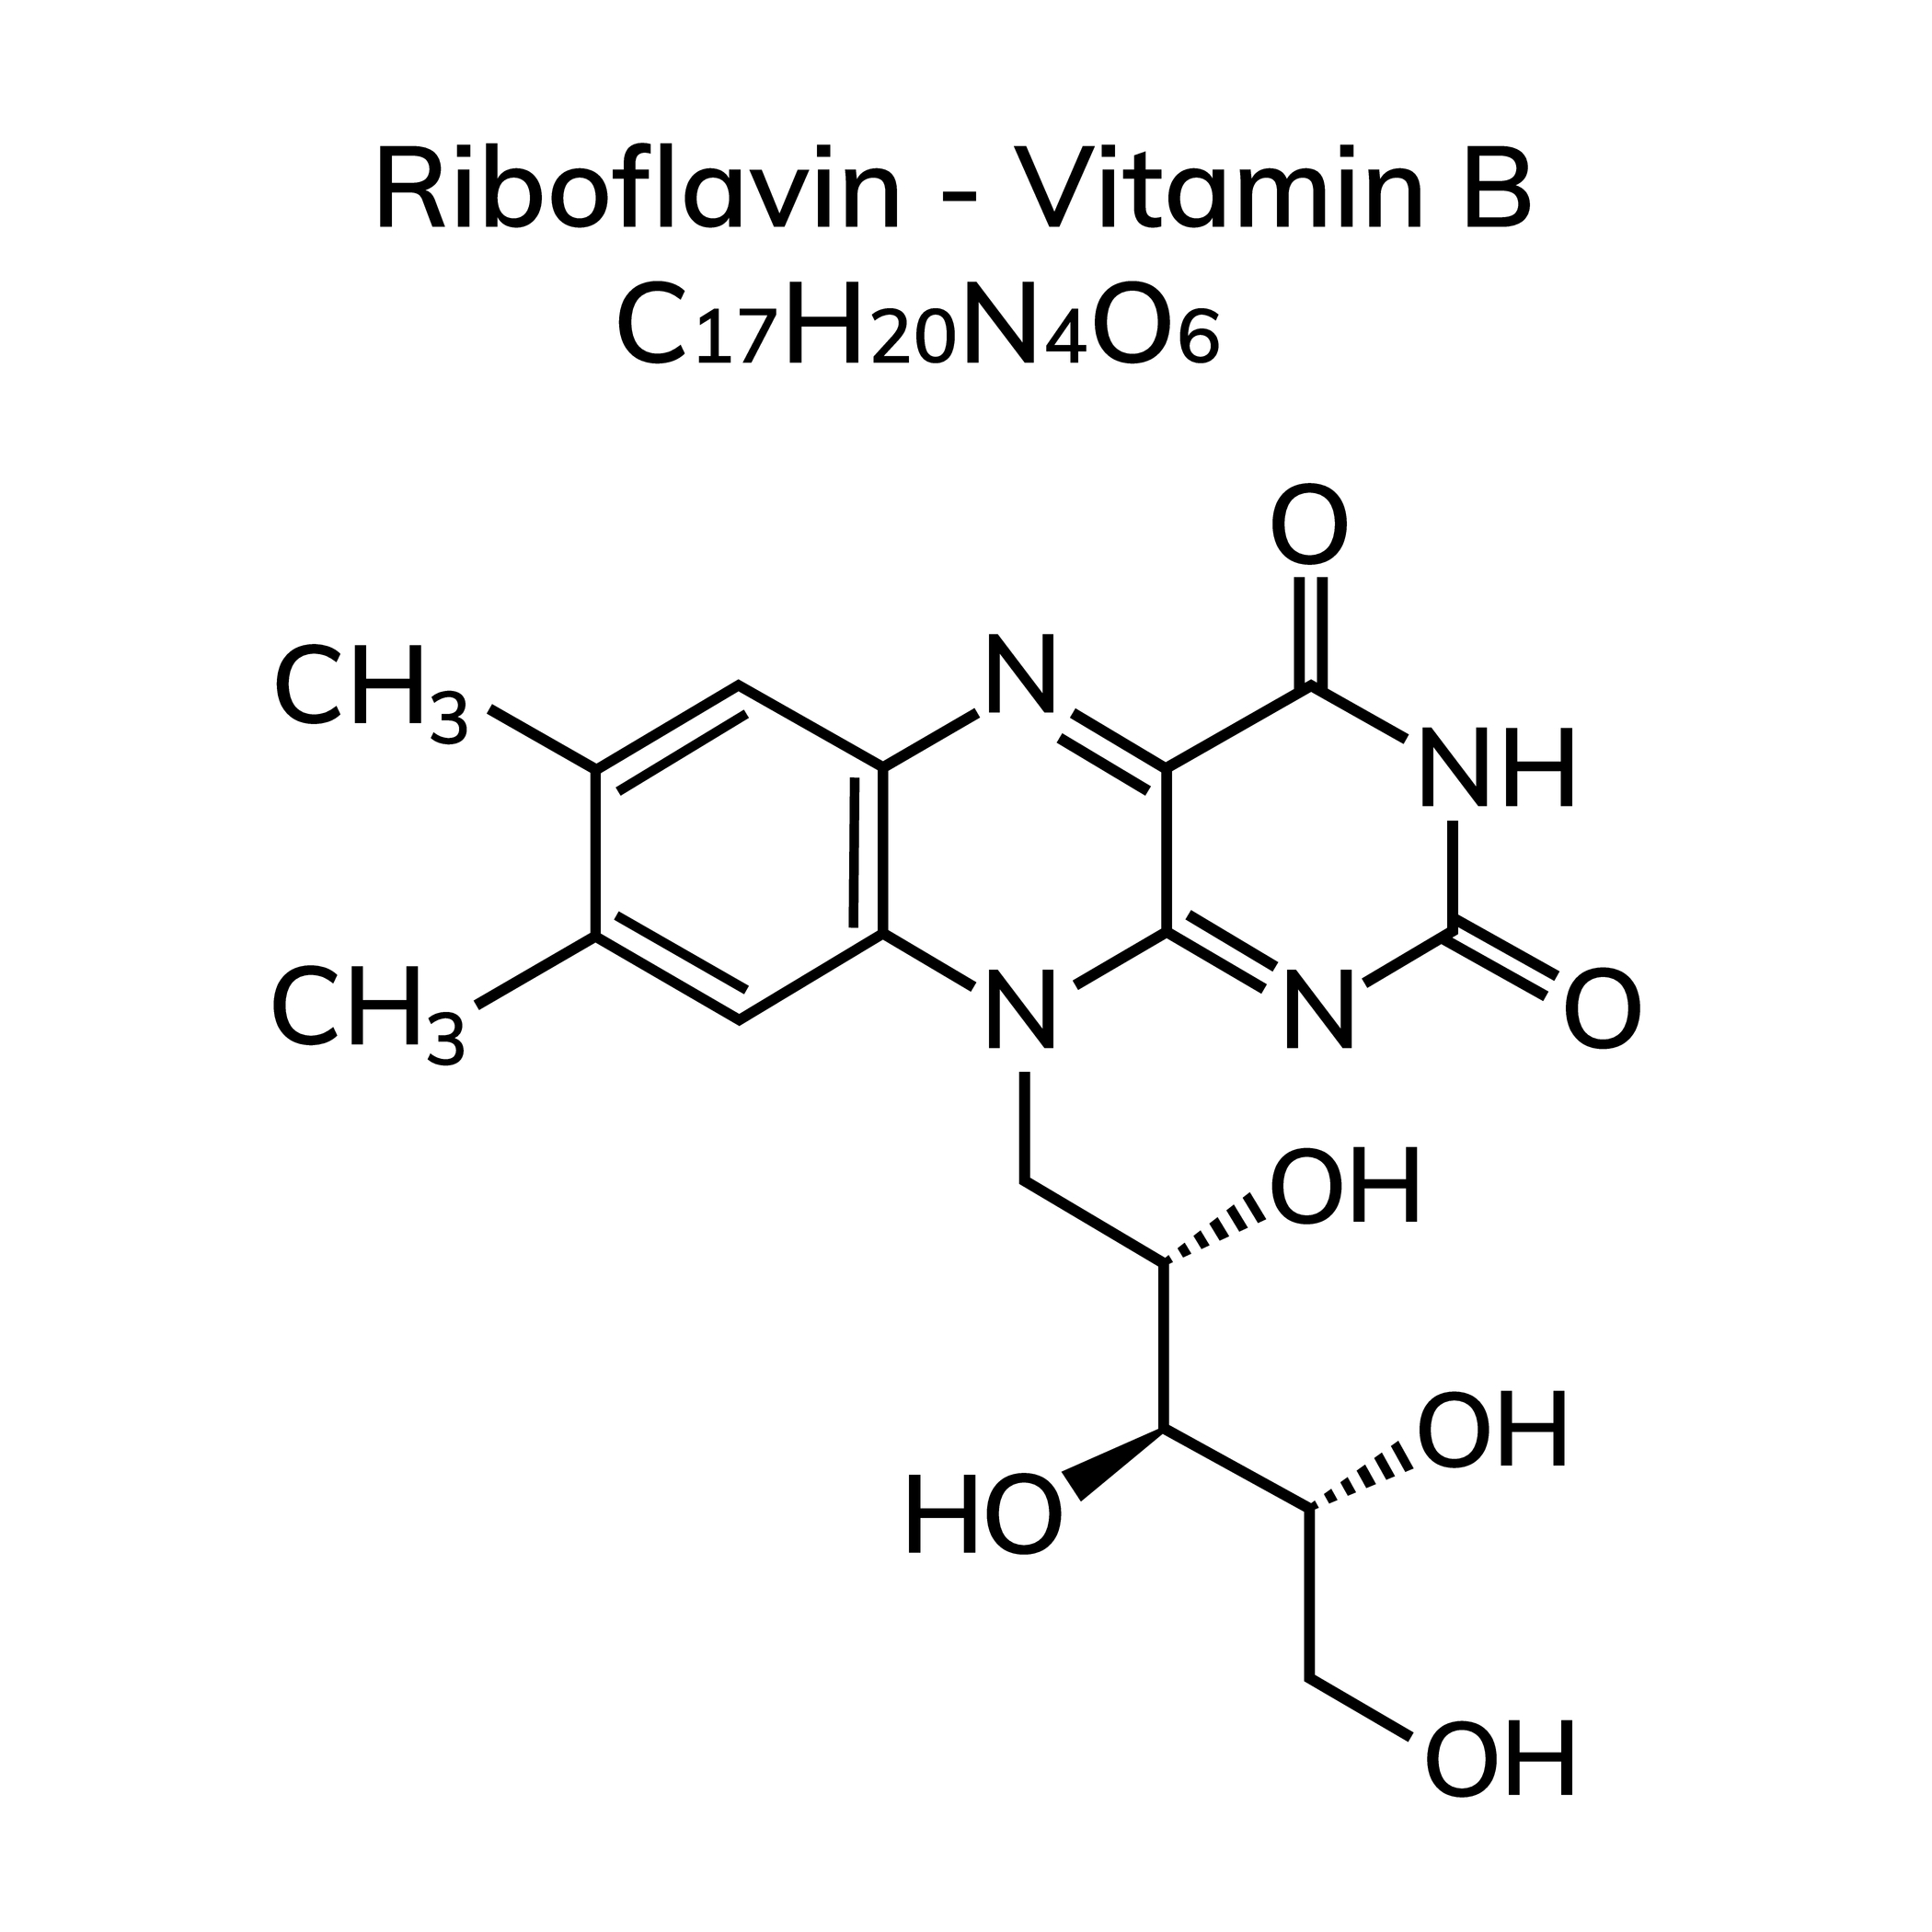 B2-vitamin